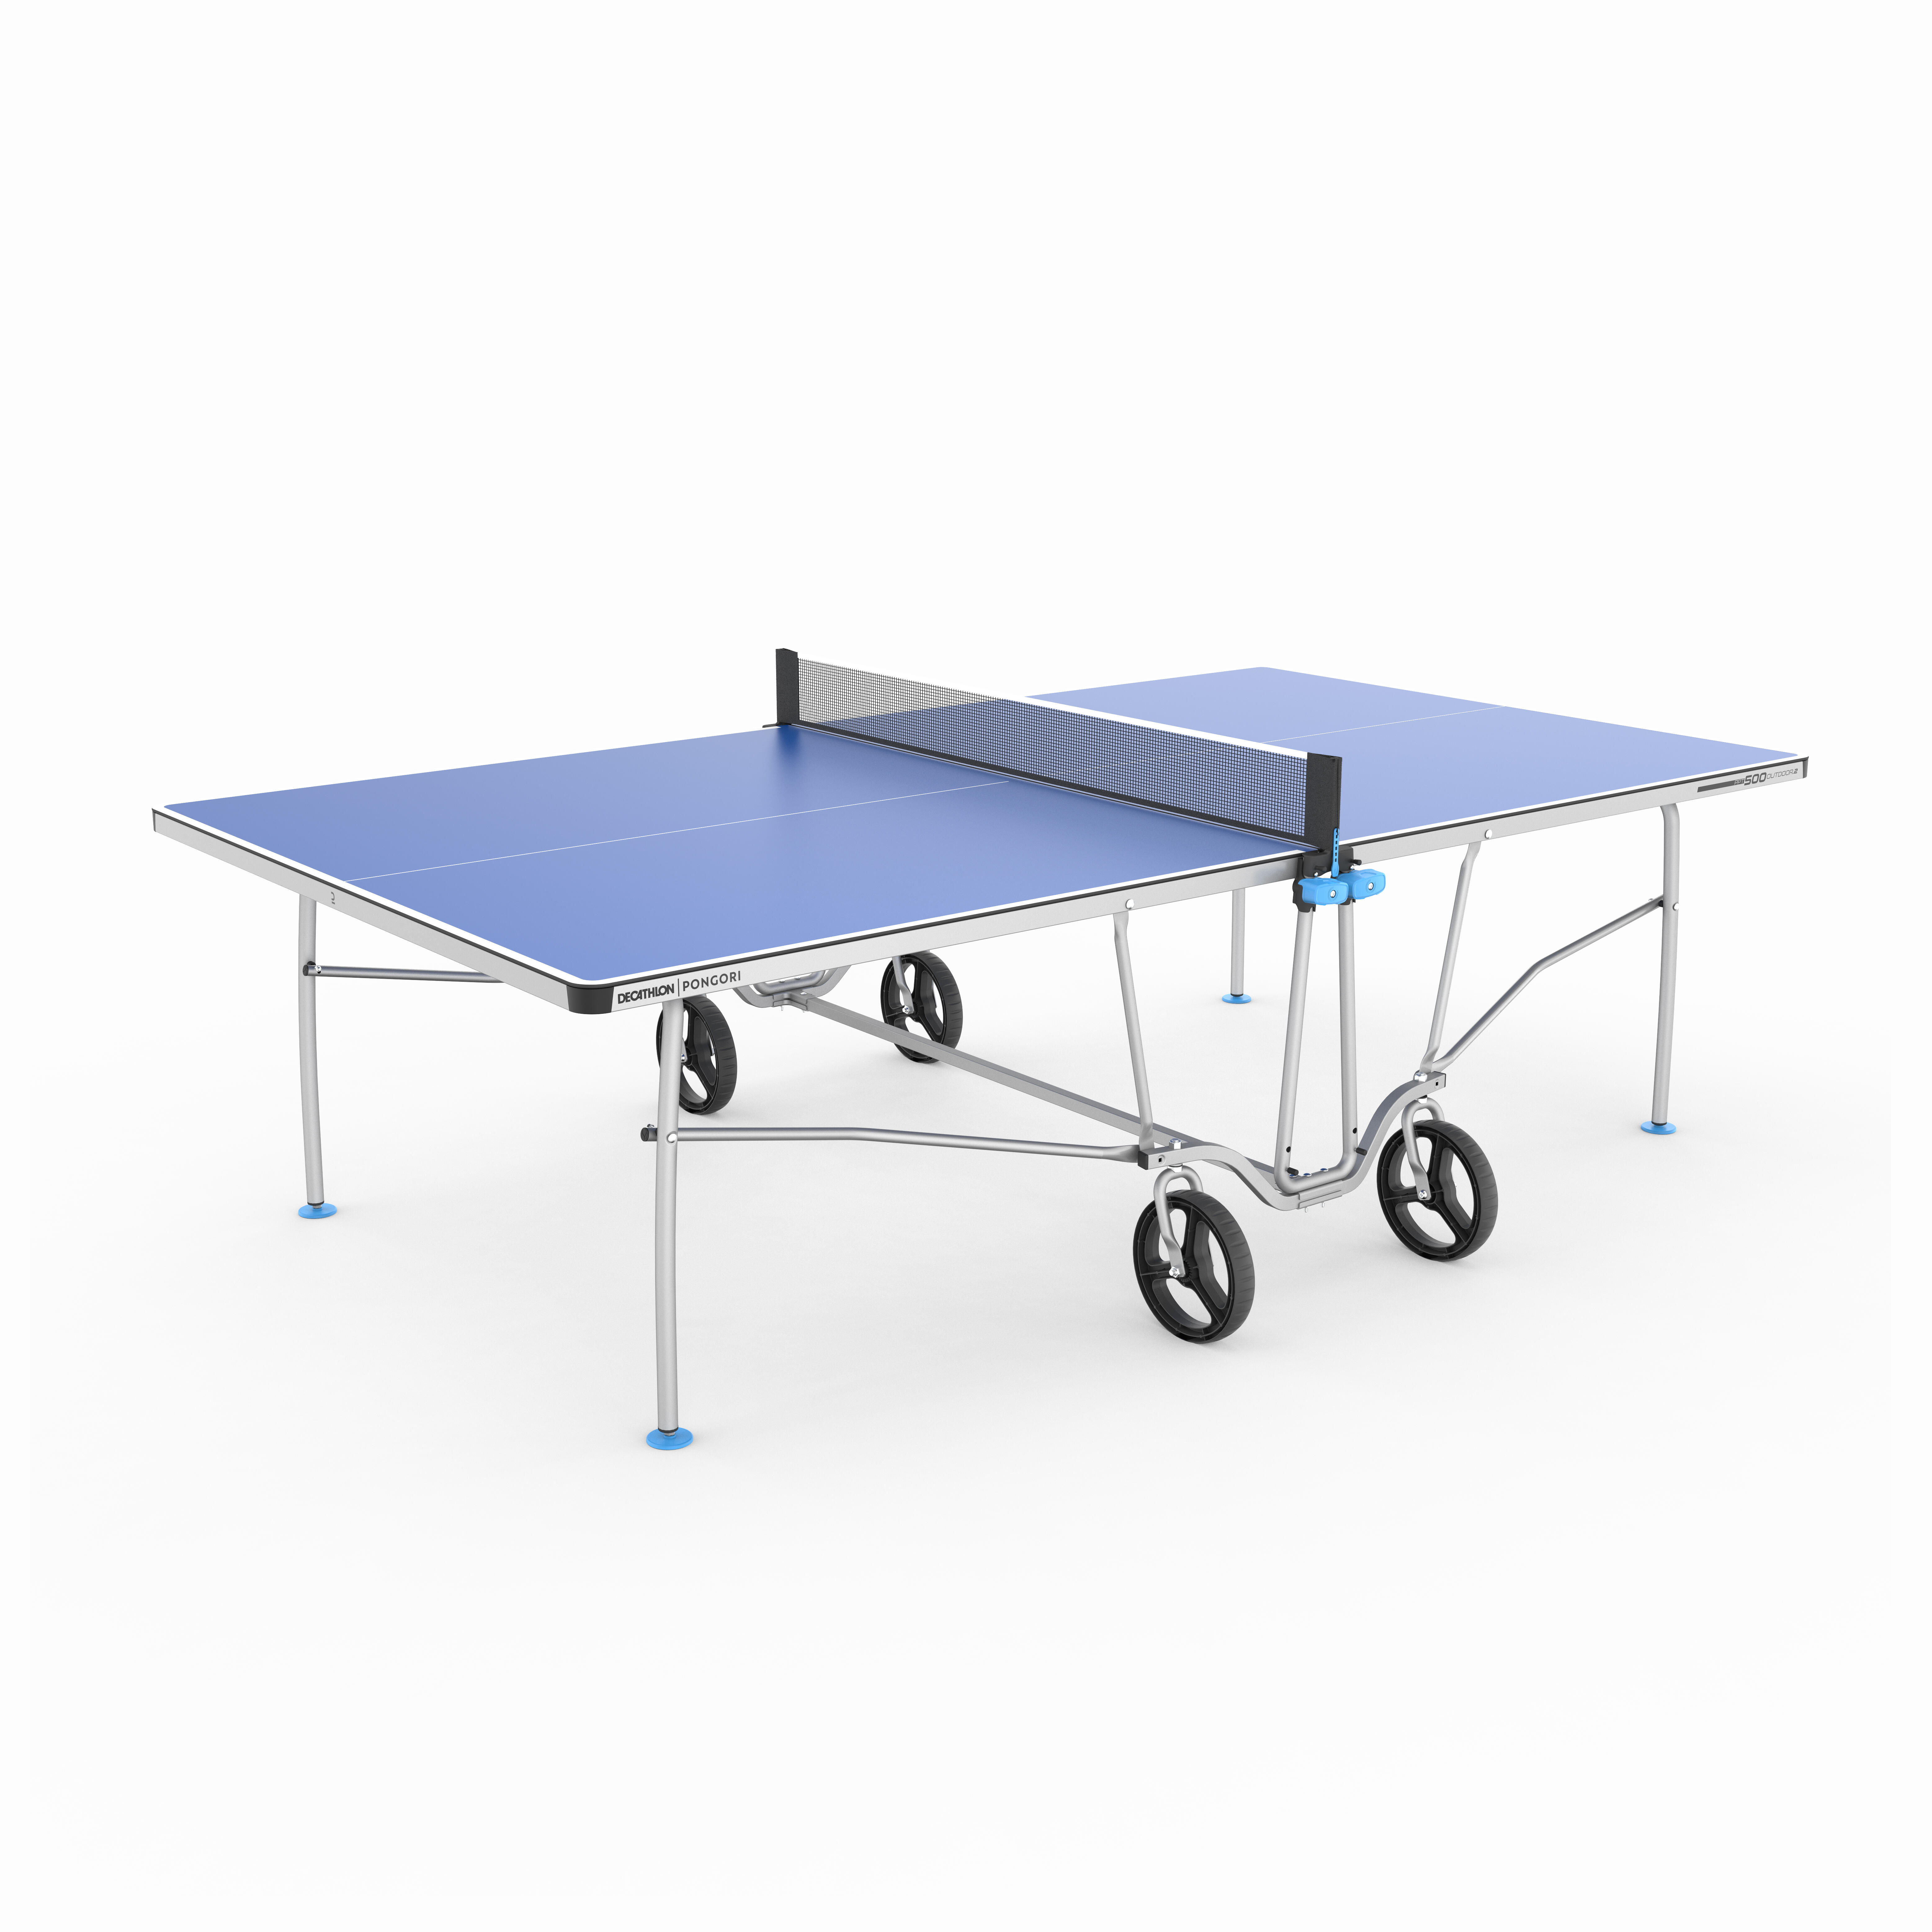 Table de tennis de table pour extérieur - PPT 500.2 bleu - PONGORI